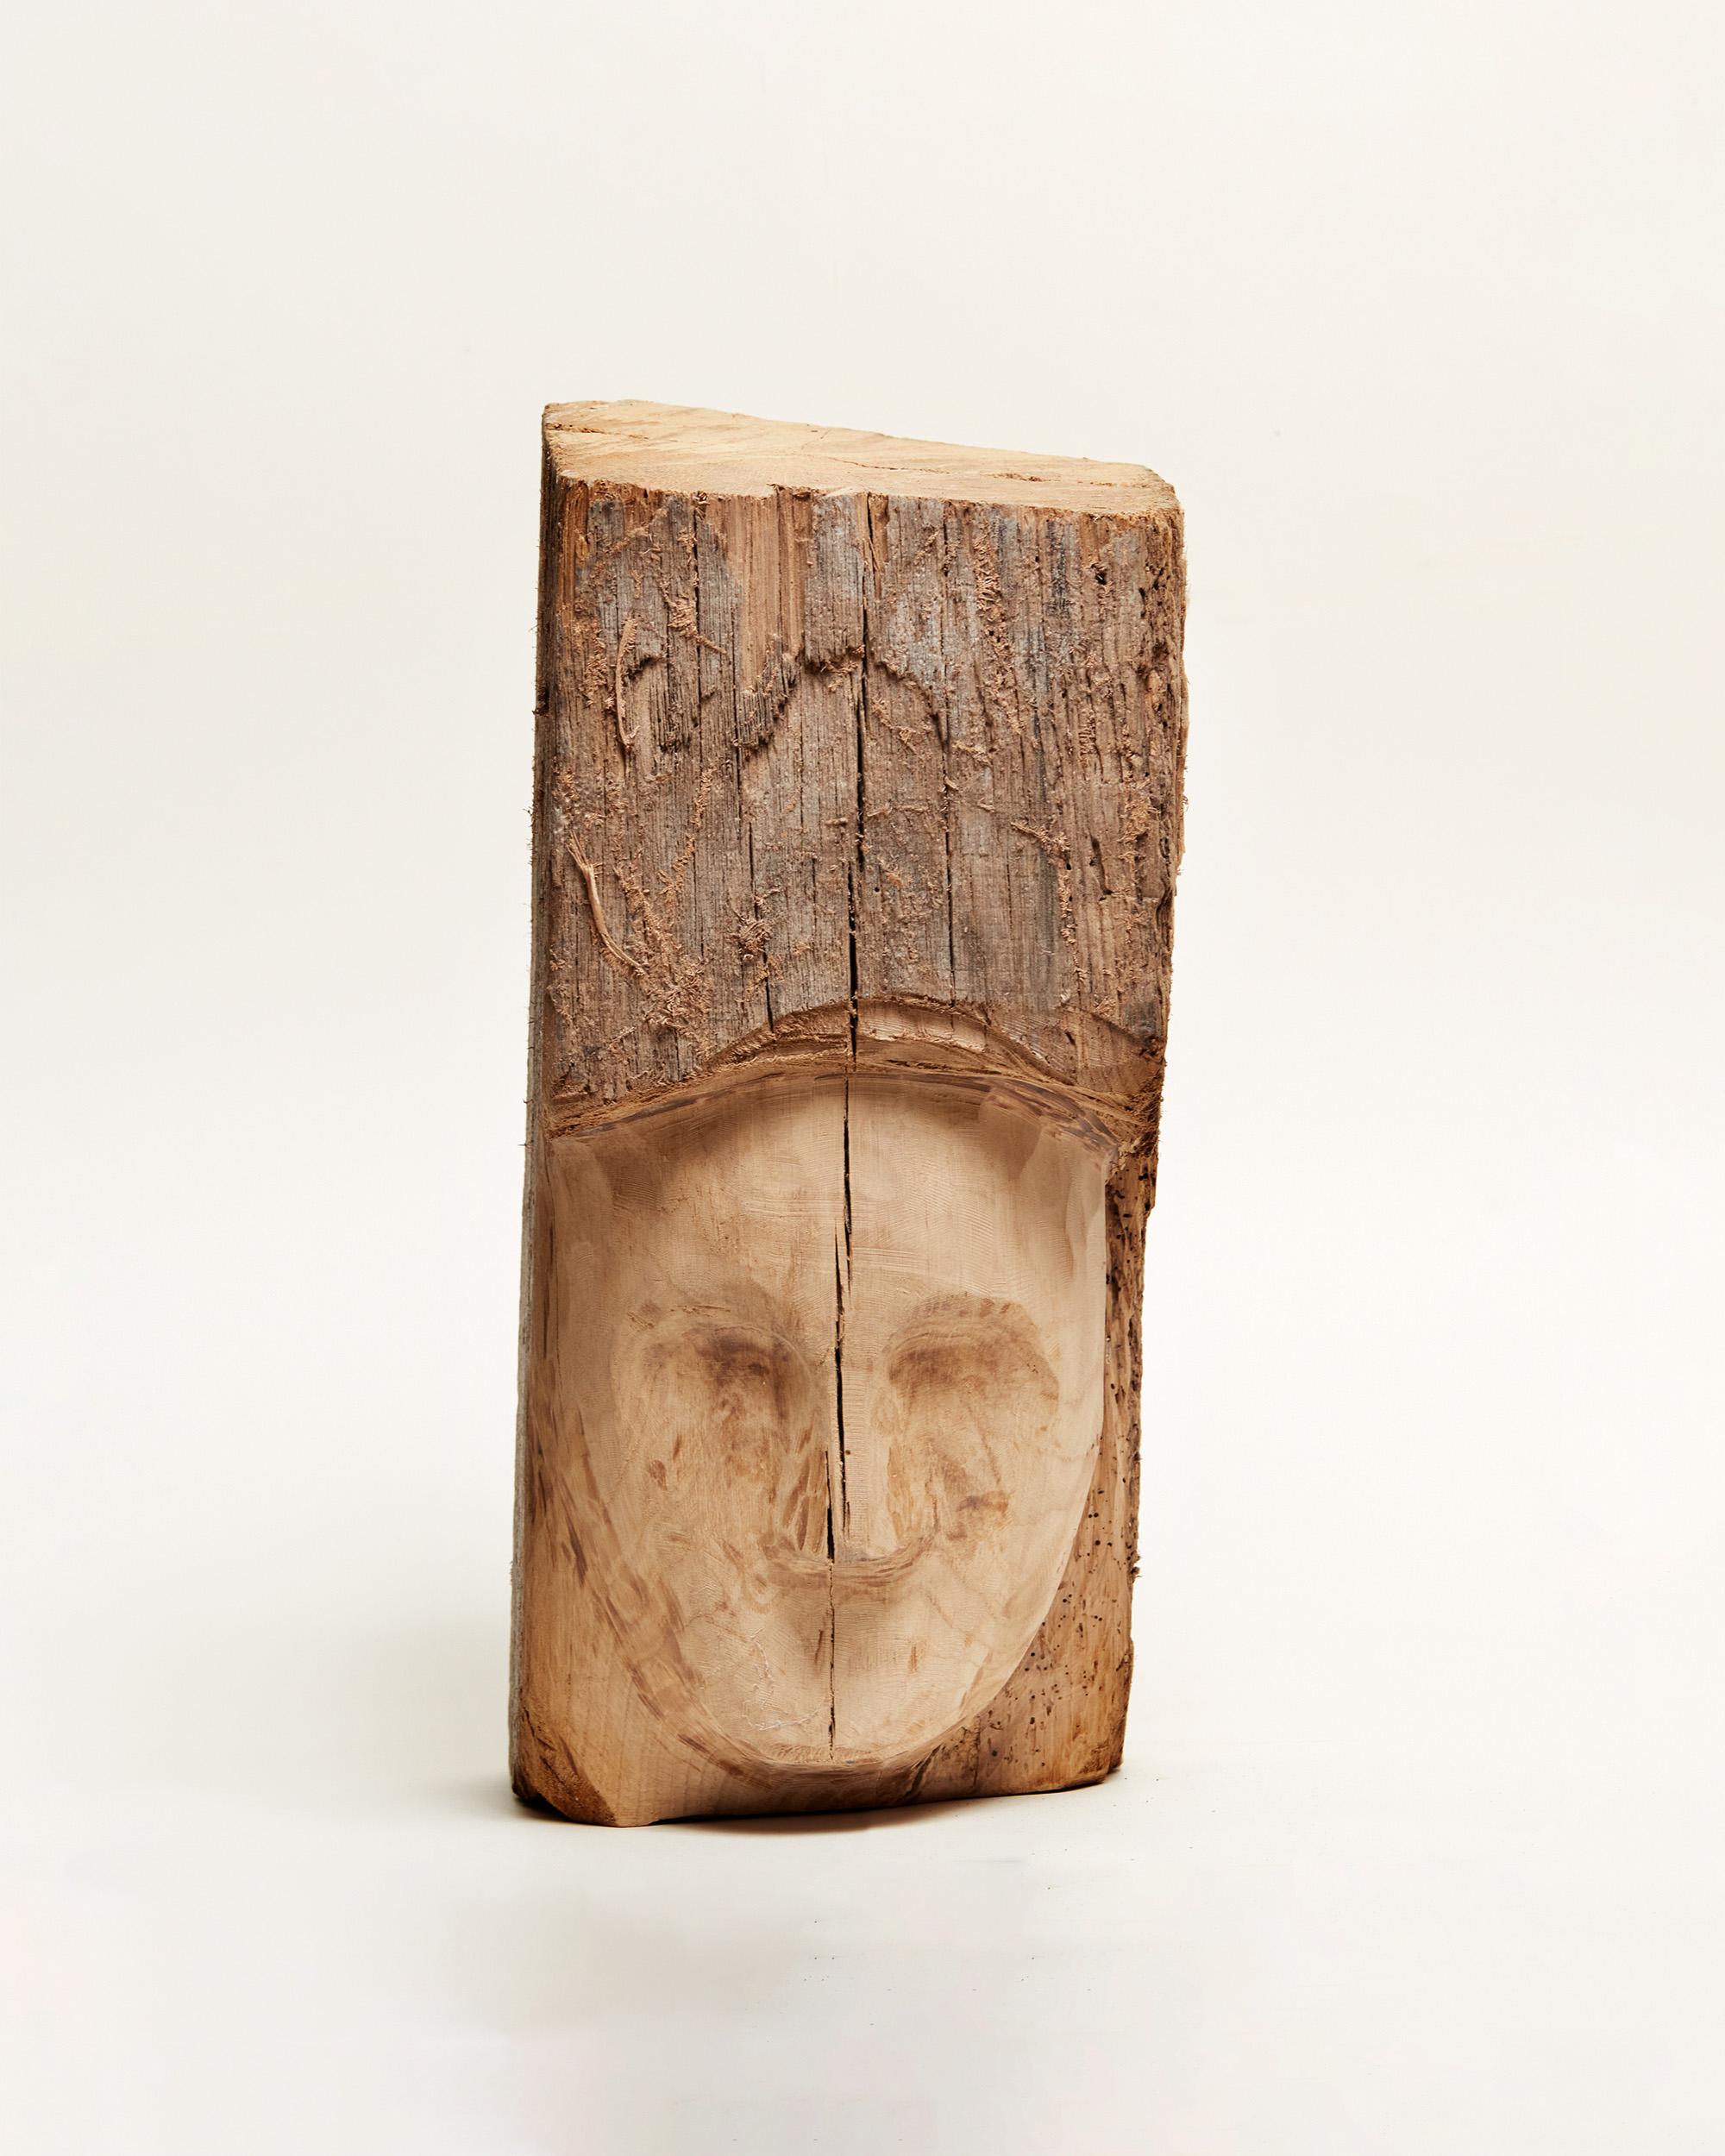 Portraits assemblés - Wood portrait sculpture - Neo-Expressionist Sculpture by Valentin Abad